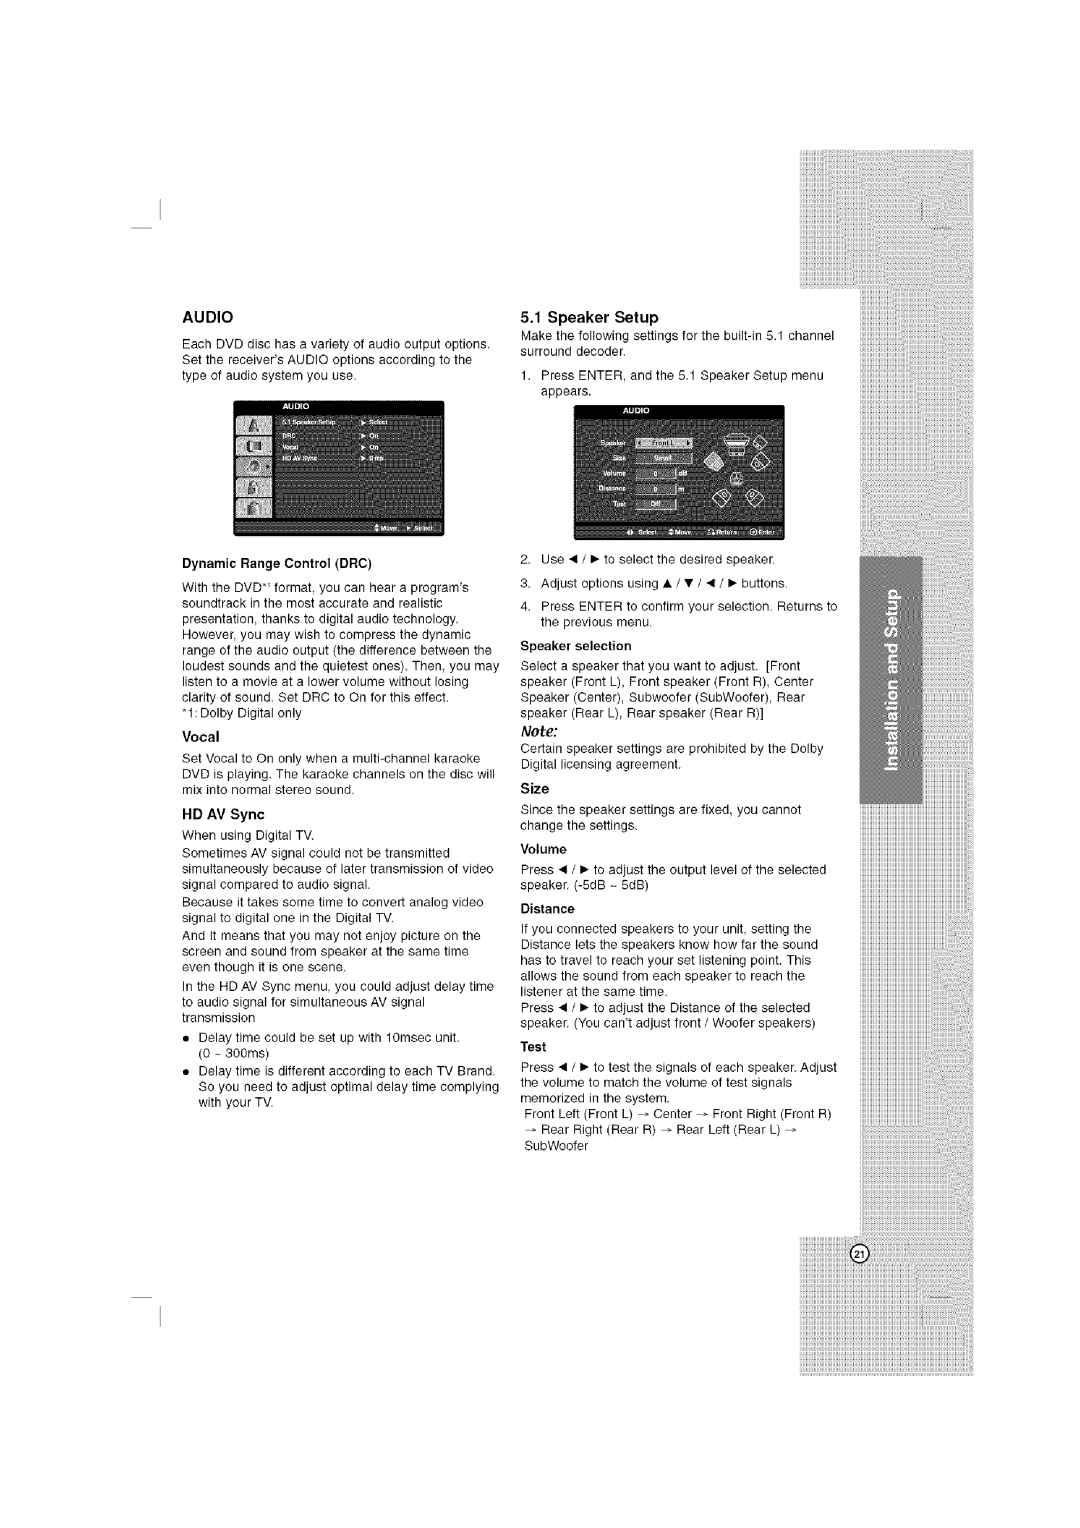 LG Electronics LHT764 owner manual Audio, 5.1Speaker Setup, Vocal, Test 